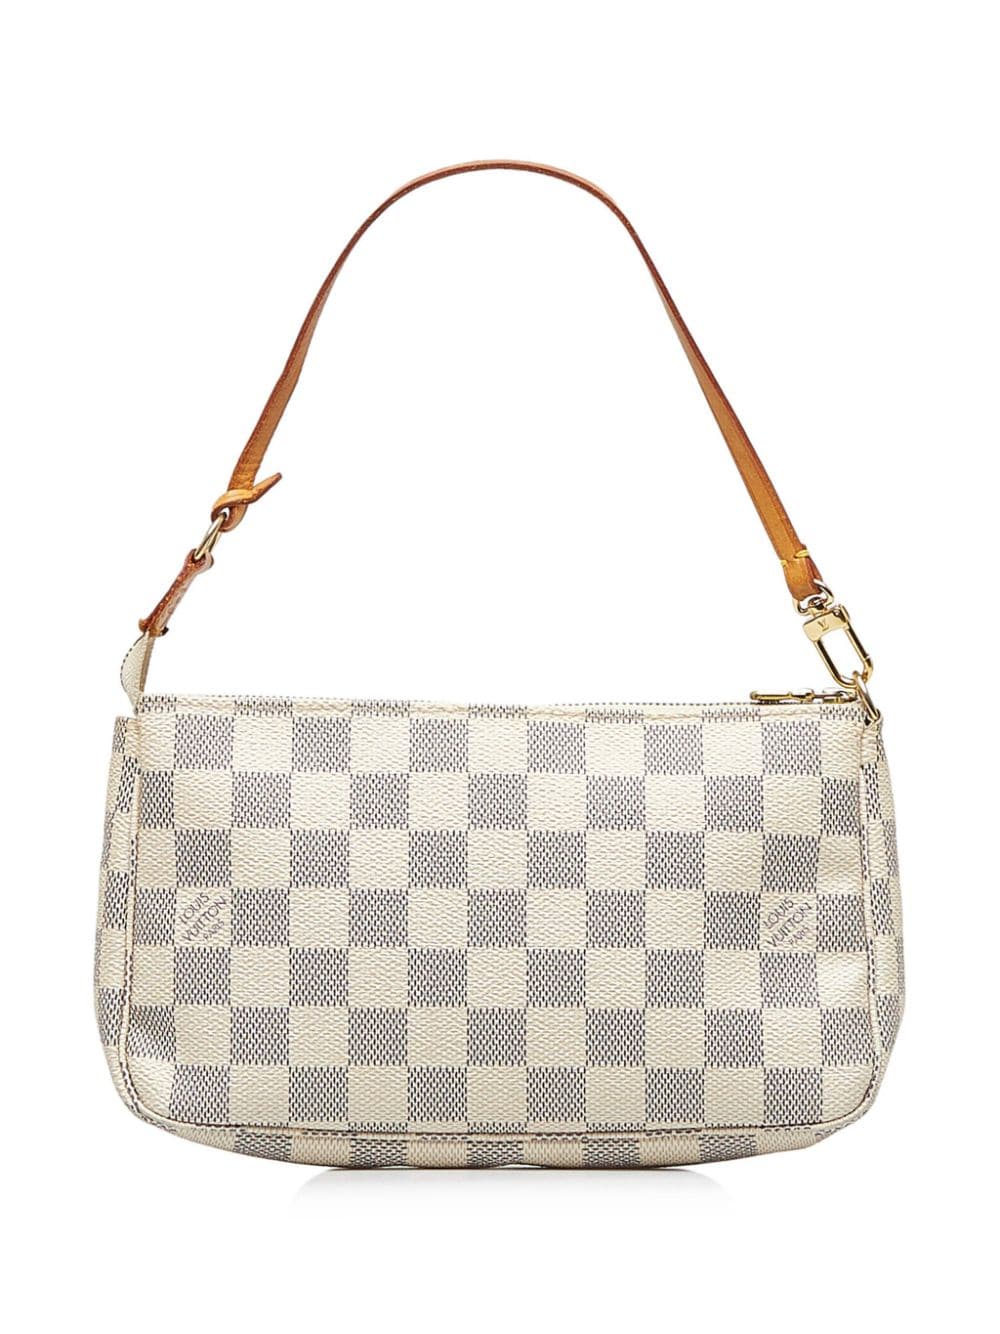 Louis Vuitton 2007 pre-owned Damier Azur Pochette Accessoires handbag - Beige